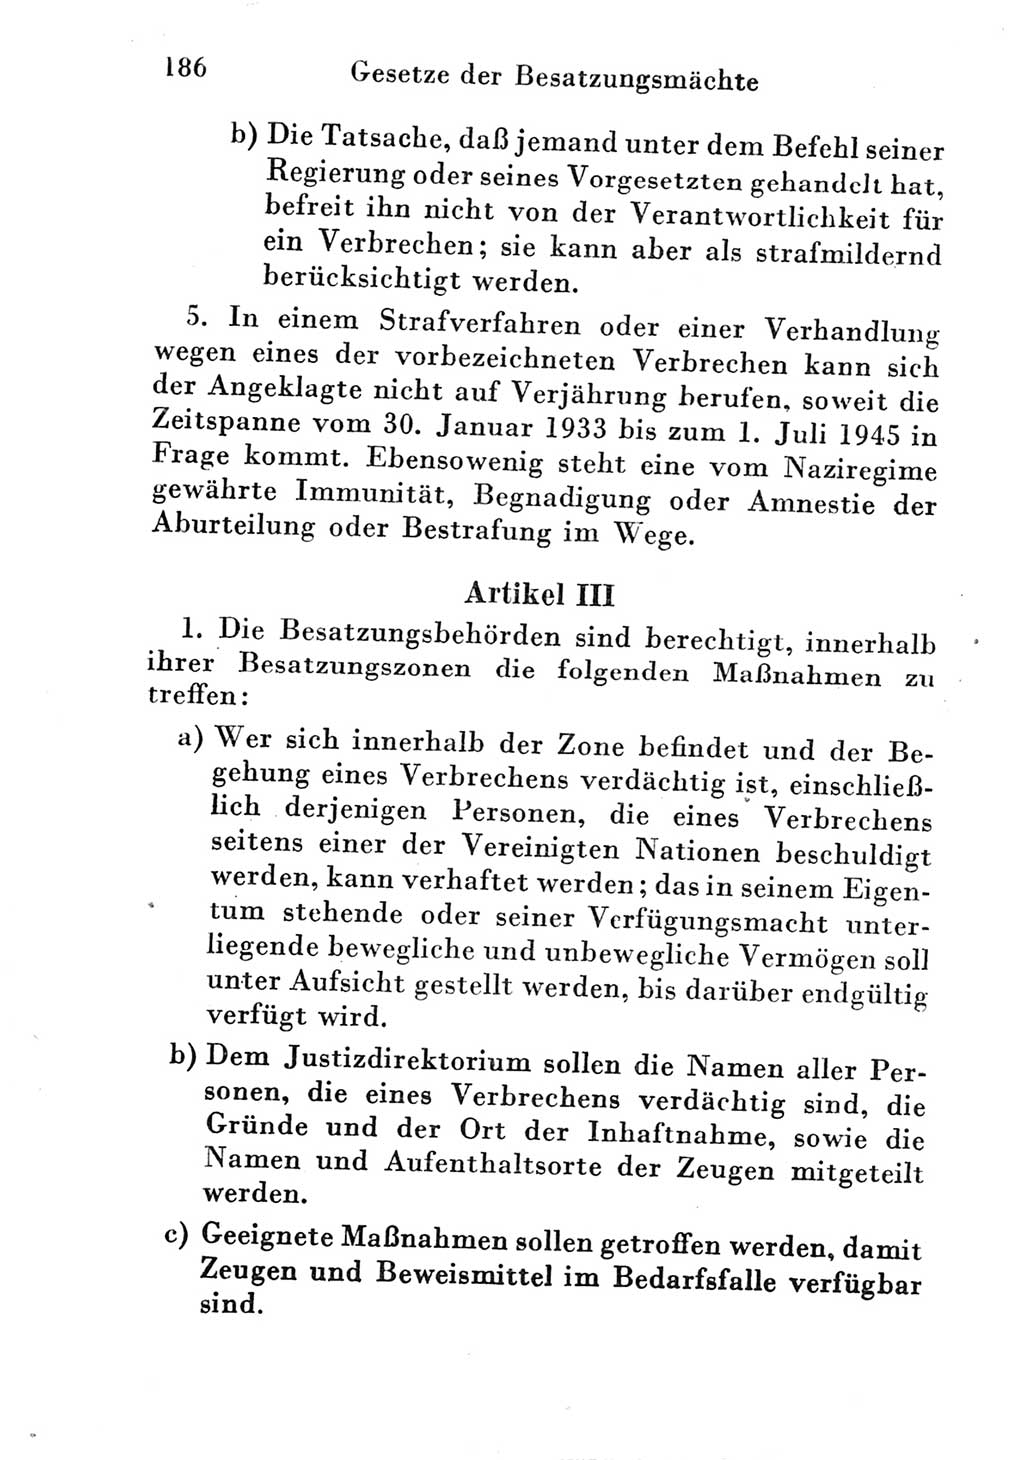 Strafgesetzbuch (StGB) und andere Strafgesetze [Deutsche Demokratische Republik (DDR)] 1951, Seite 186 (StGB Strafges. DDR 1951, S. 186)